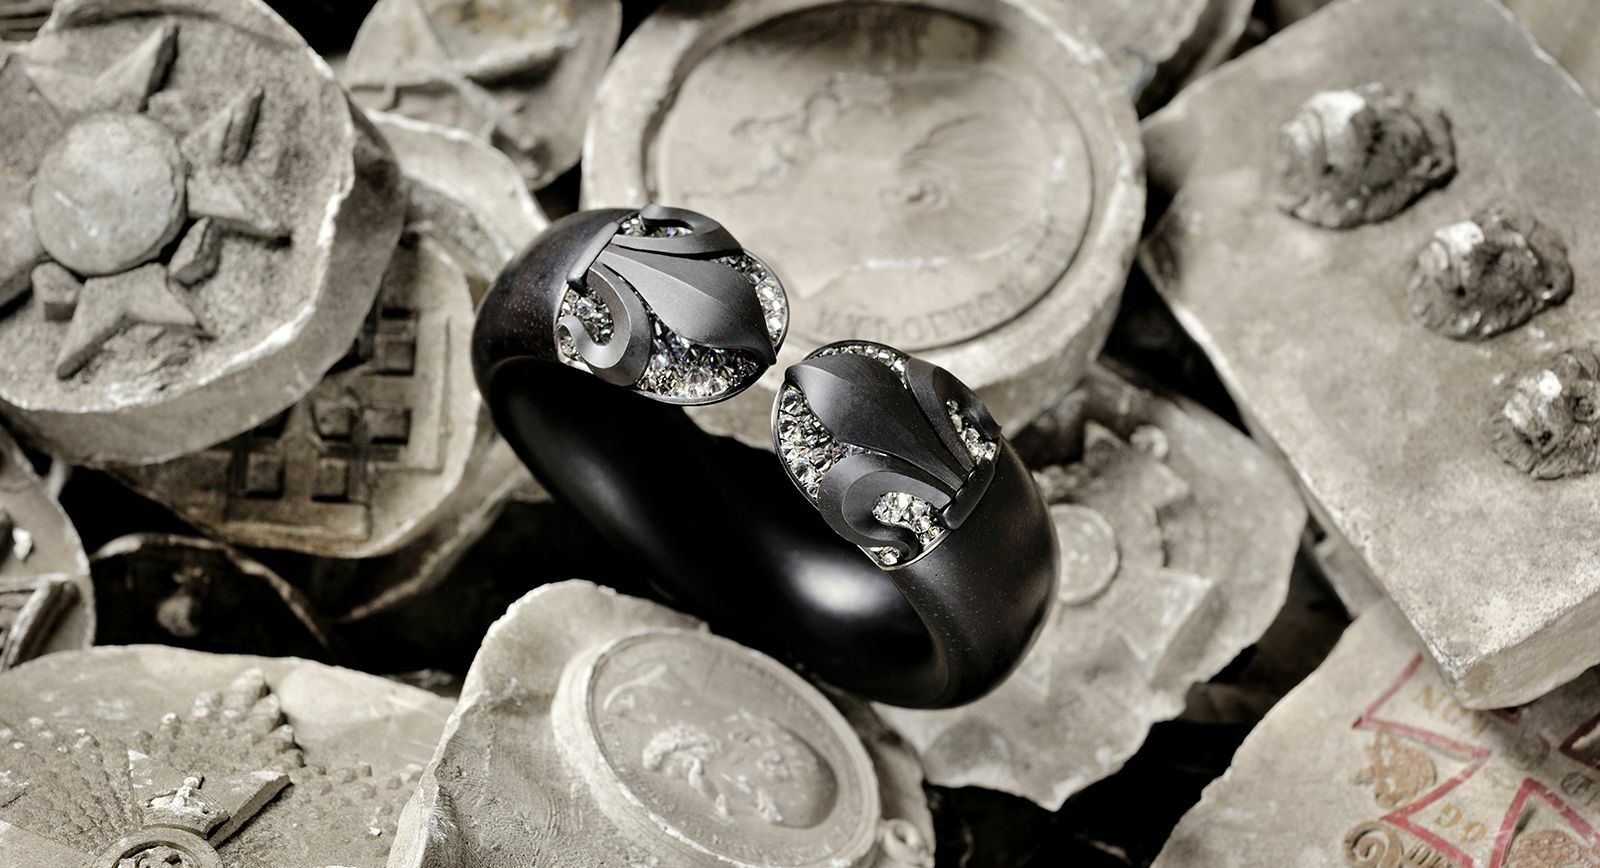 Браслет Hemmerle Harmony с бриллиантами, черным деревом, железом, серебром и белым золотом 2018 года выпуска, теперь в частной коллекции